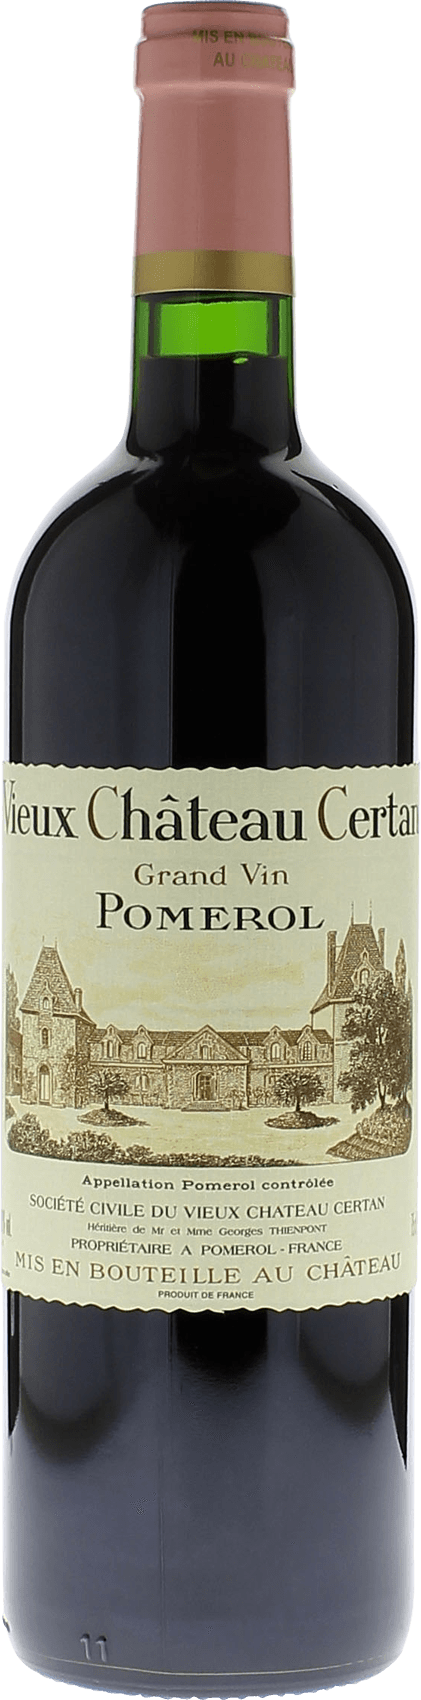 Vieux chteau  certan 2013  Pomerol, Bordeaux rouge